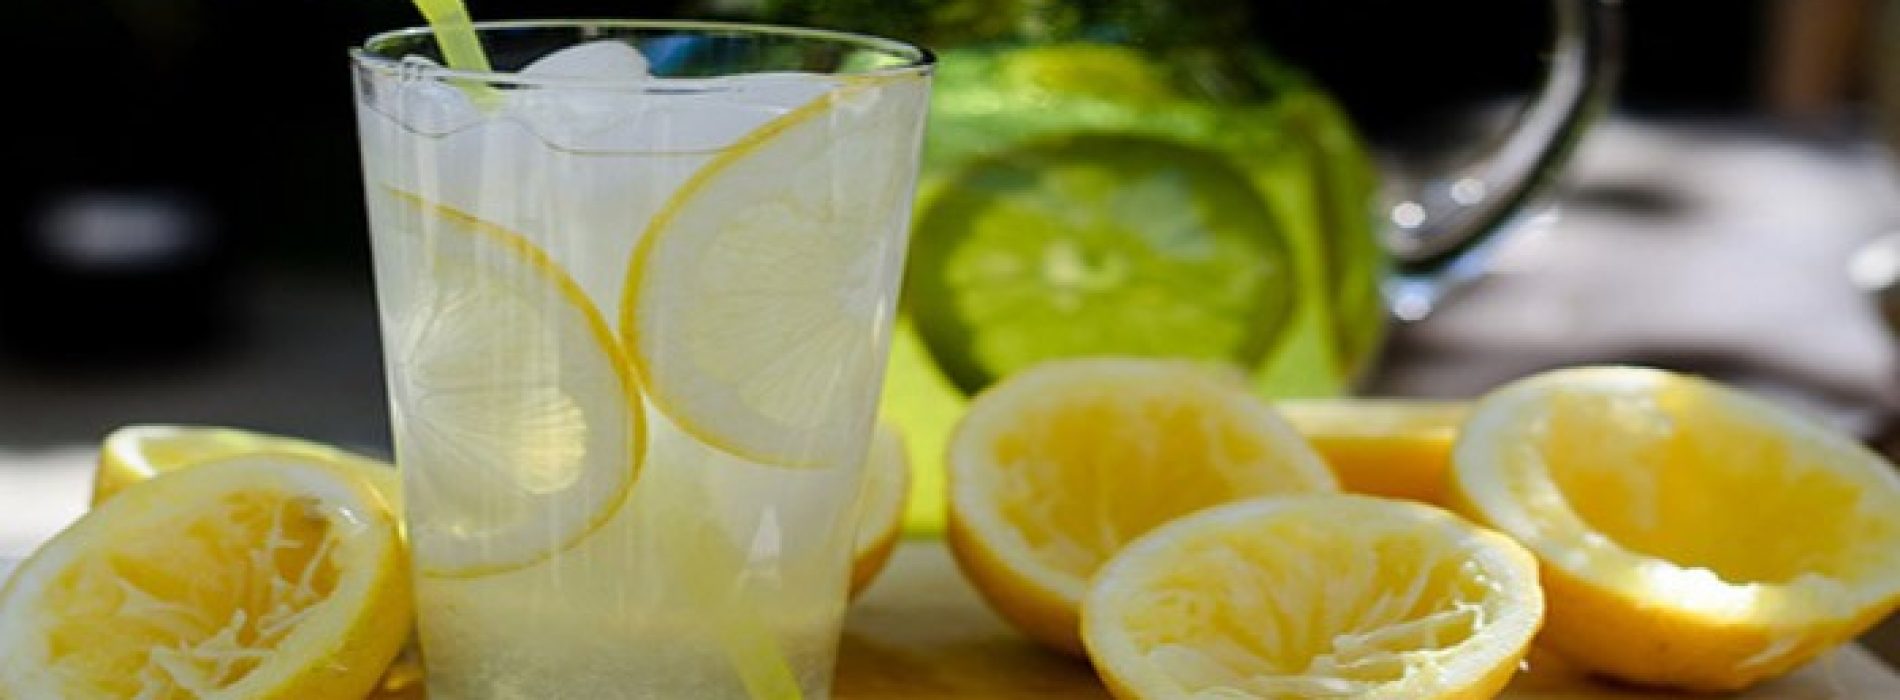 Wonderbaarlijke gezondheidsvoordelen met Citroensap in je water, natuurlijke detox